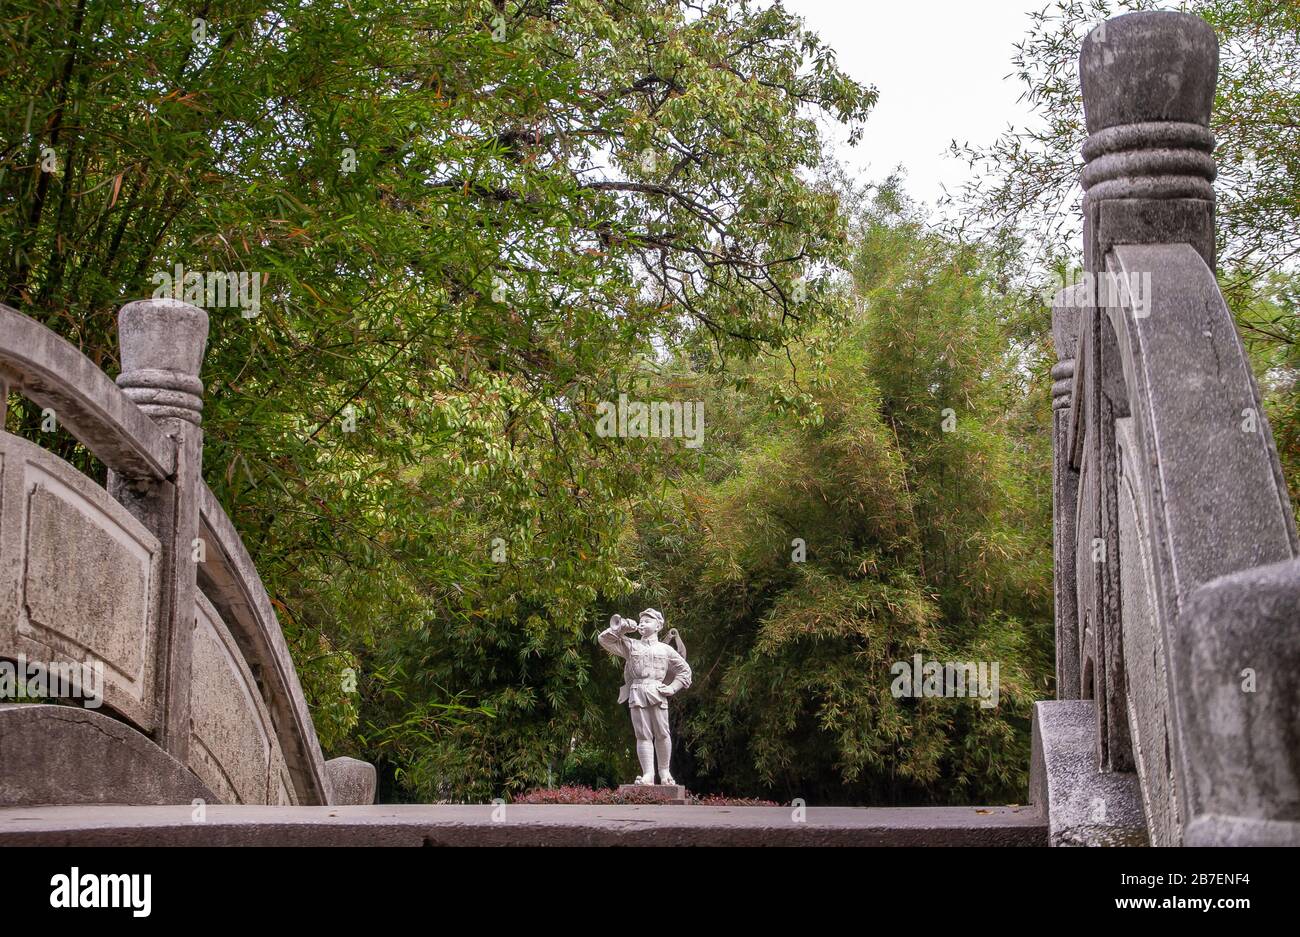 Guilin, China - 11. Mai 2010: Seven Star Park. Weiße Statue des Jungen in Militäruniform, die das Knäuel vor der Wand aus grünem Laub weht, wie es auf fro zu sehen ist Stockfoto